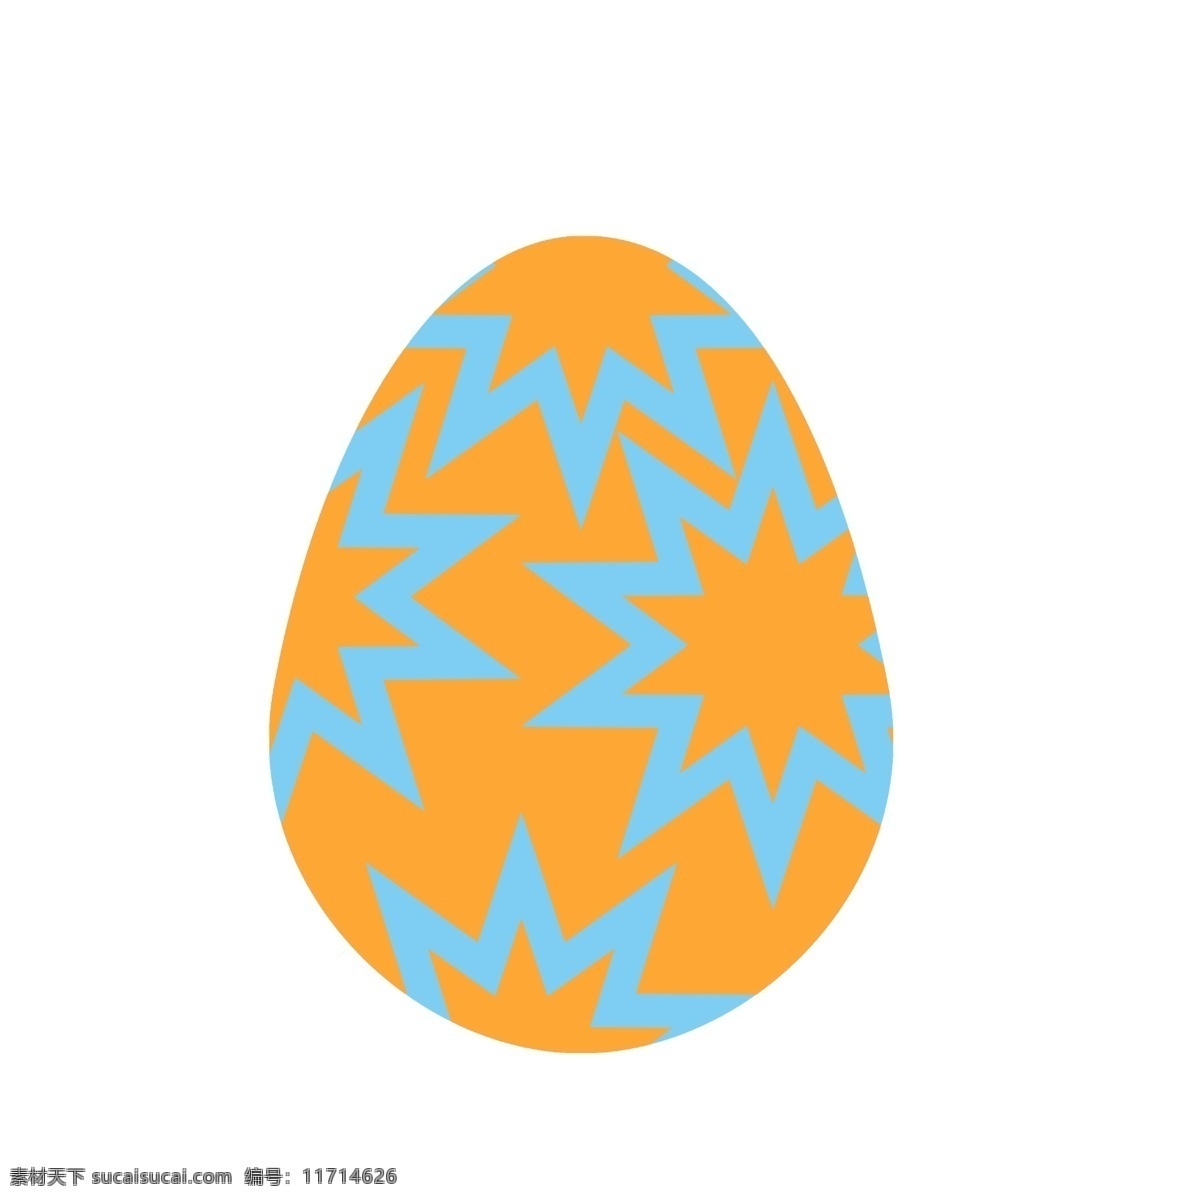 橙色 装饰 彩蛋 插画 复活节 彩蛋插画 蛋 橙色装饰彩蛋 蓝色 漂亮的彩蛋 复活节蛋